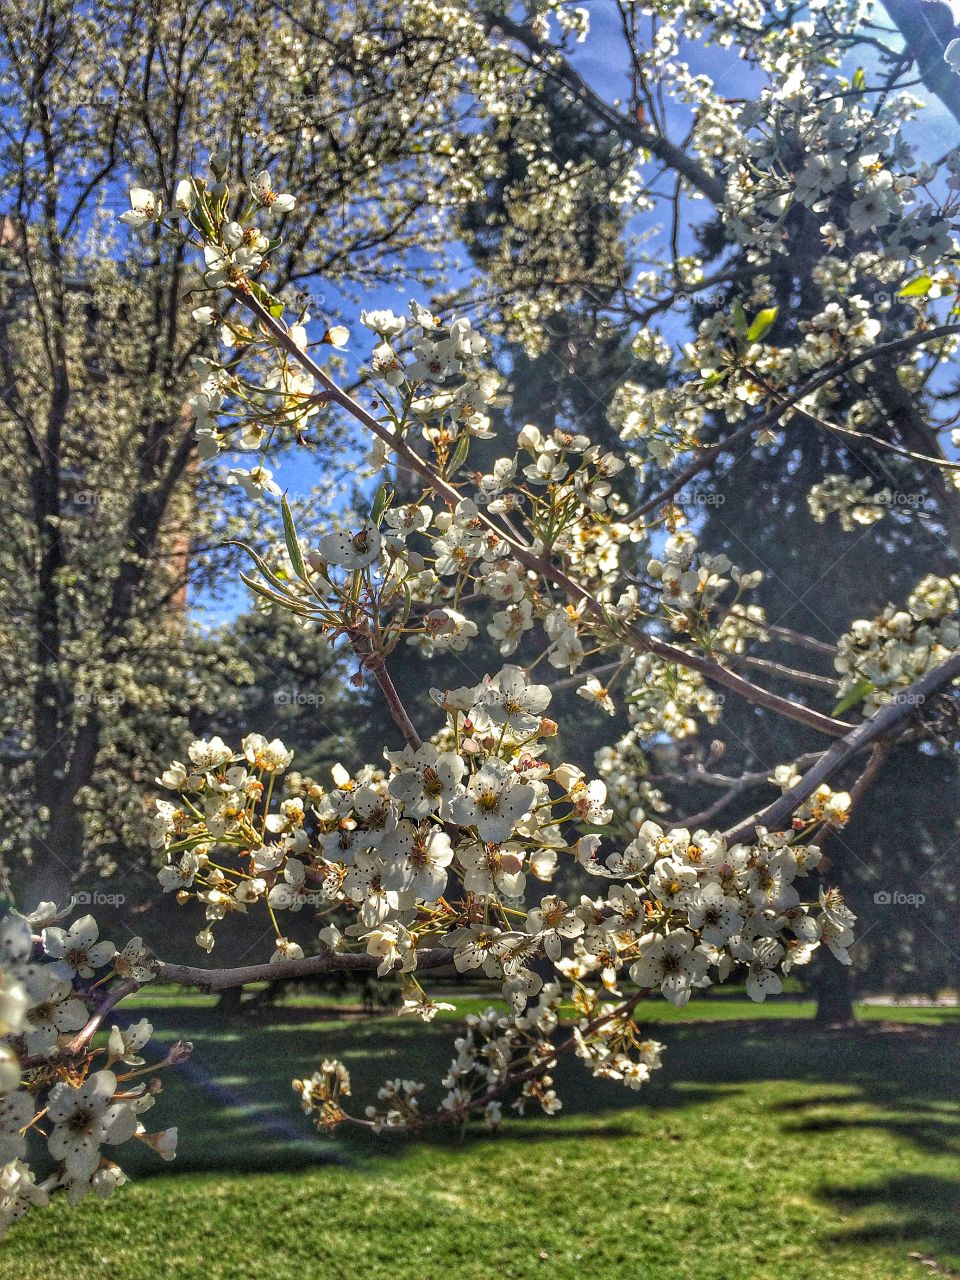 Spring has sprung in Colorado